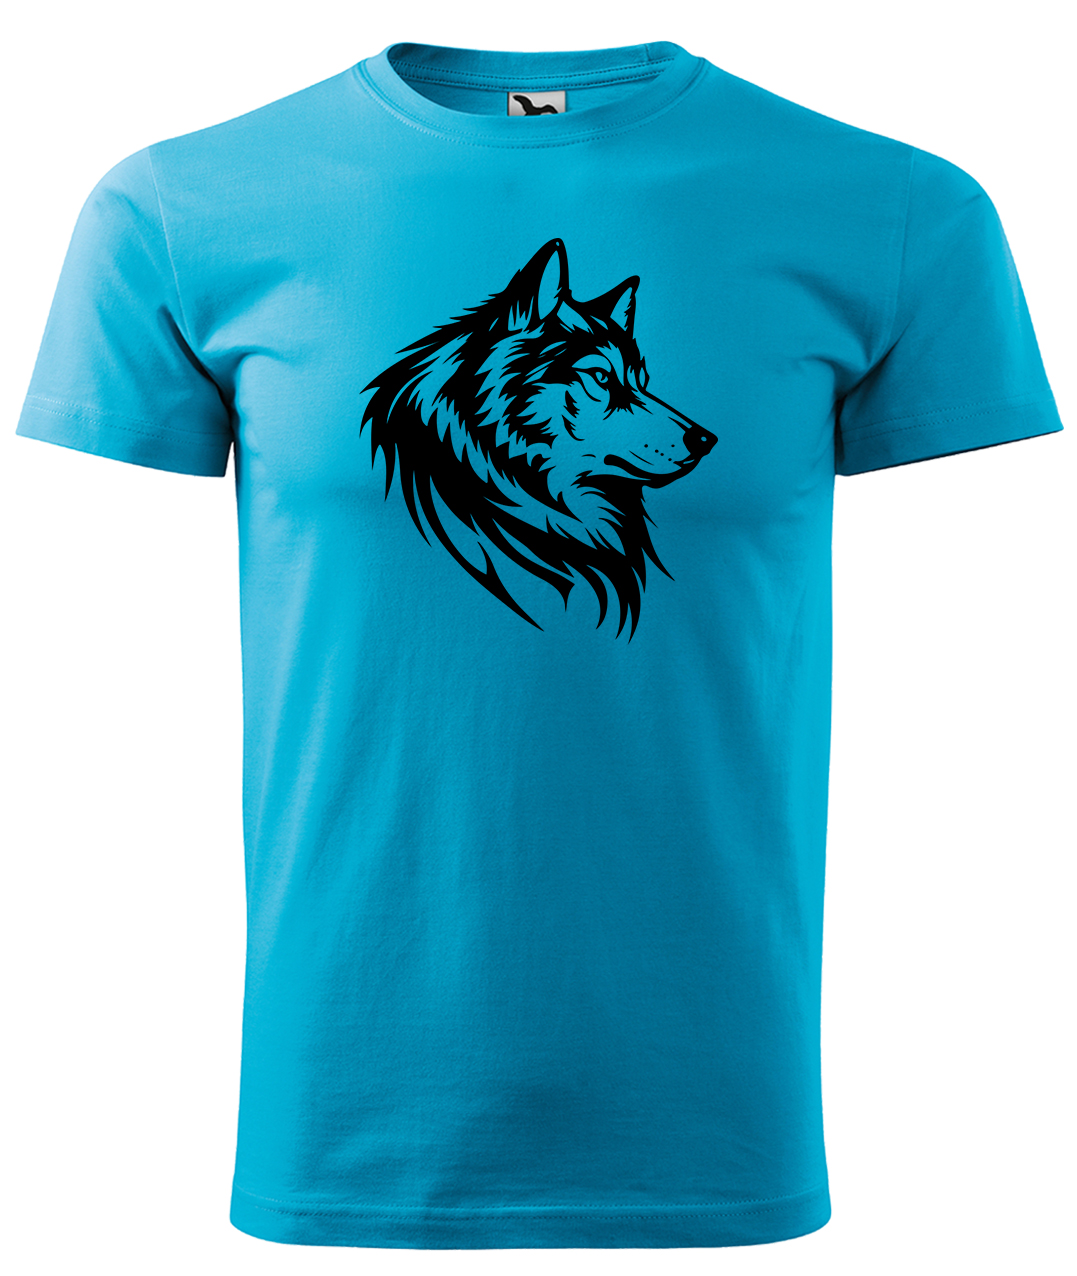 Dětské tričko s vlkem - Wolf Velikost: 4 roky / 110 cm, Barva: Tyrkysová (44), Délka rukávu: Krátký rukáv